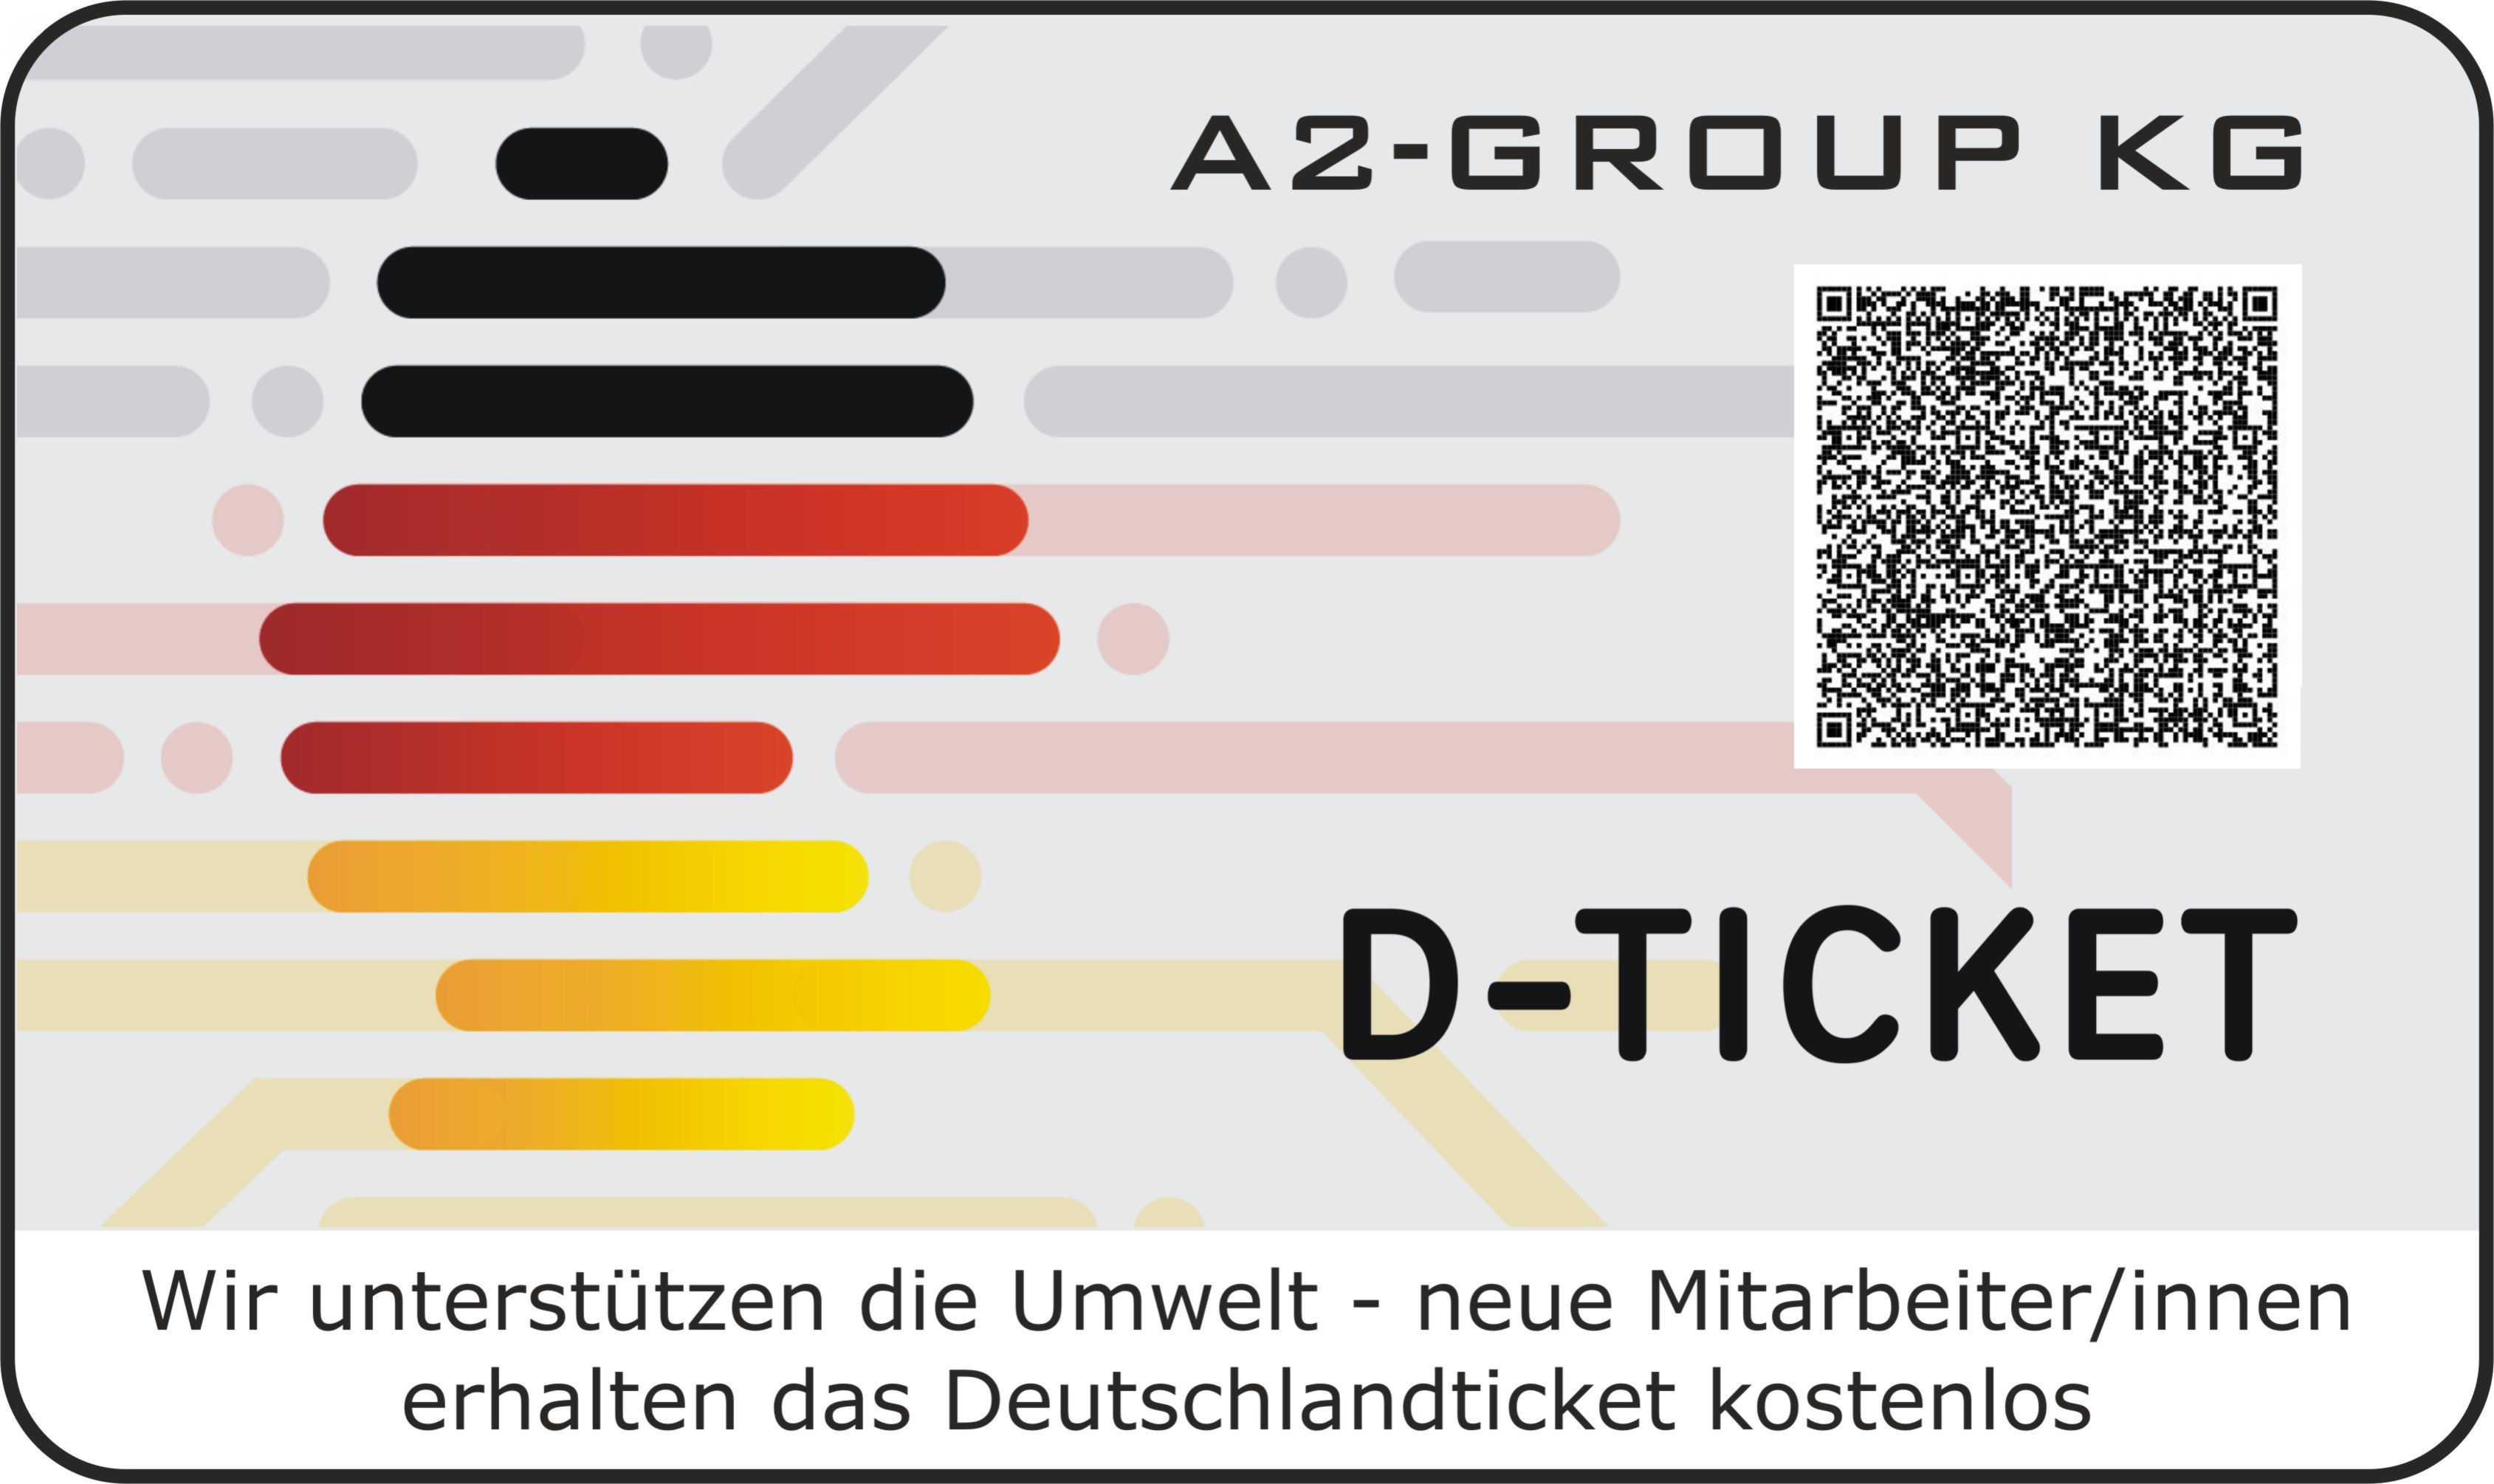 Das Deutschlandticket für Mitarbeiter/innen der A2-GROUP